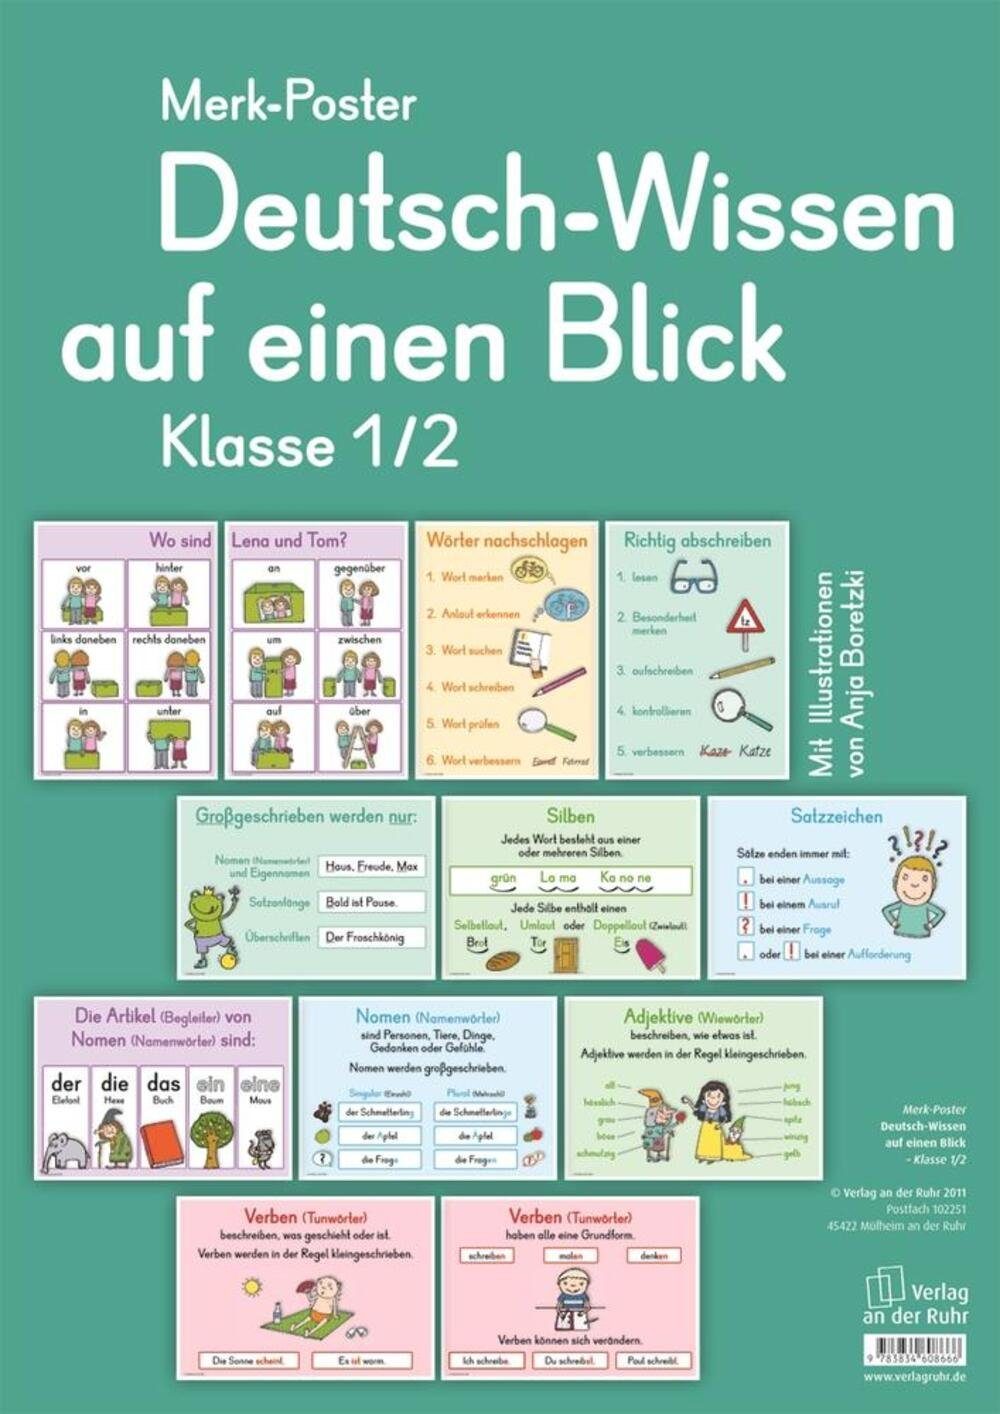 Verlag an der Ruhr Poster Merk-Poster Deutsch-Wissen auf einen Blick Klasse 1/2